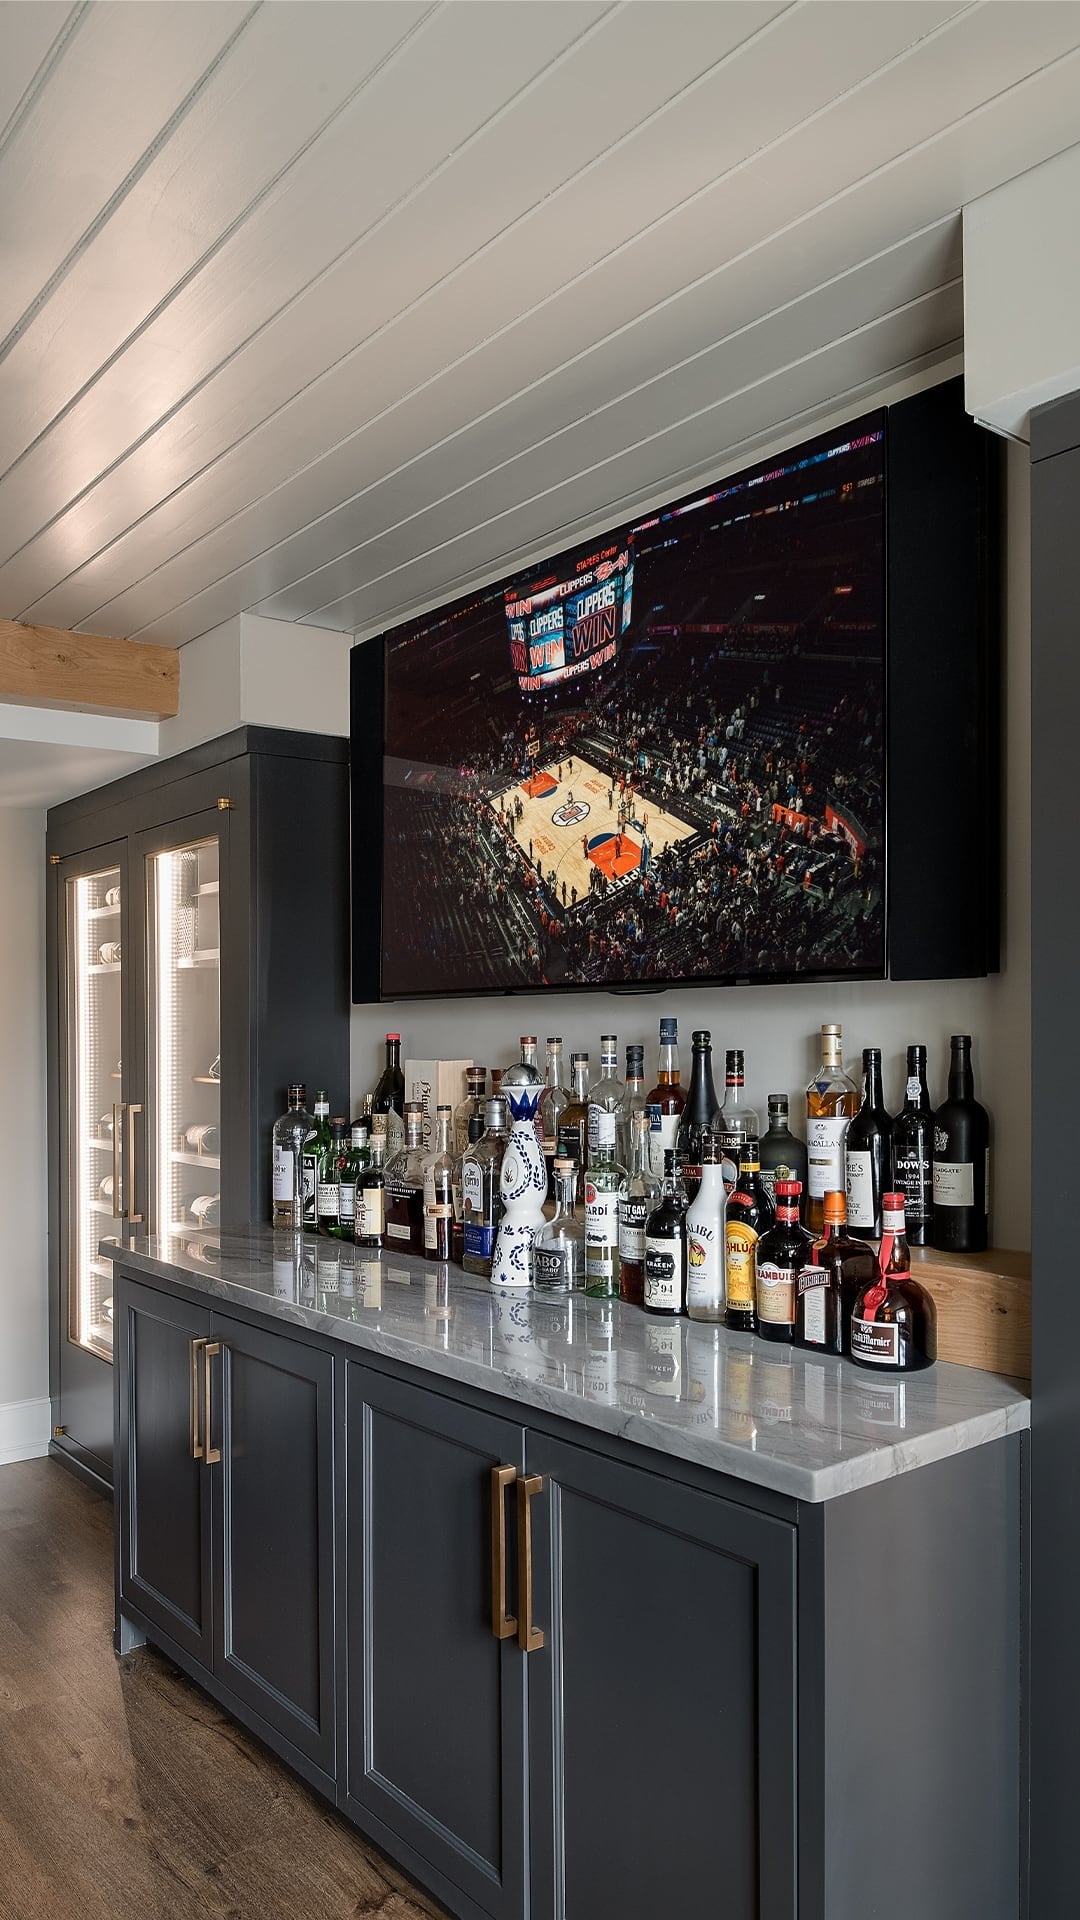 TV behind bar area